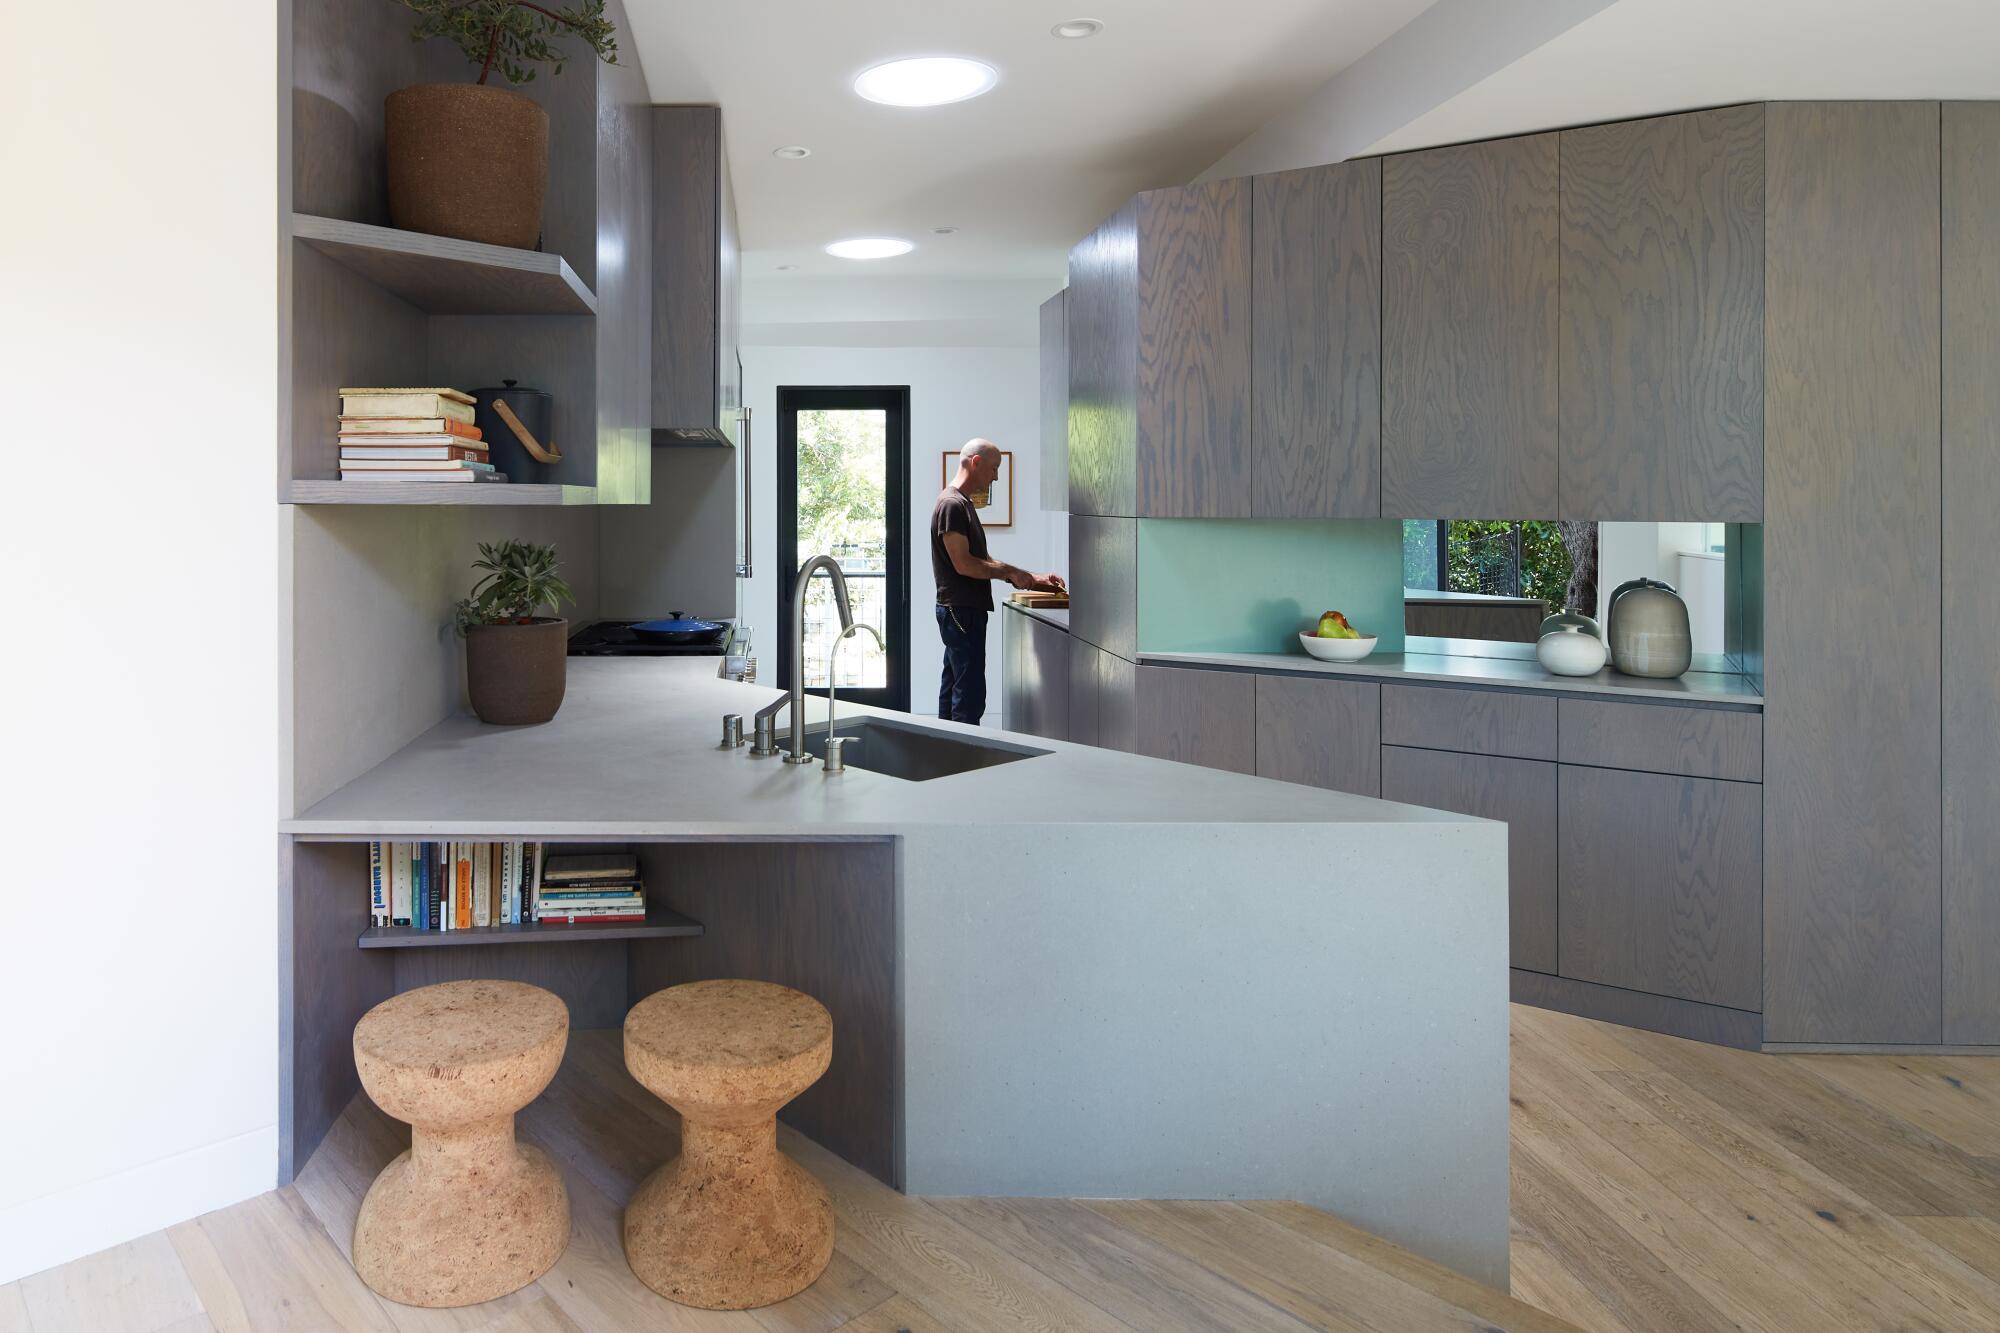 Los gabinetes de la cocina están pintados en un tono gris que recuerda al olivo del exterior.